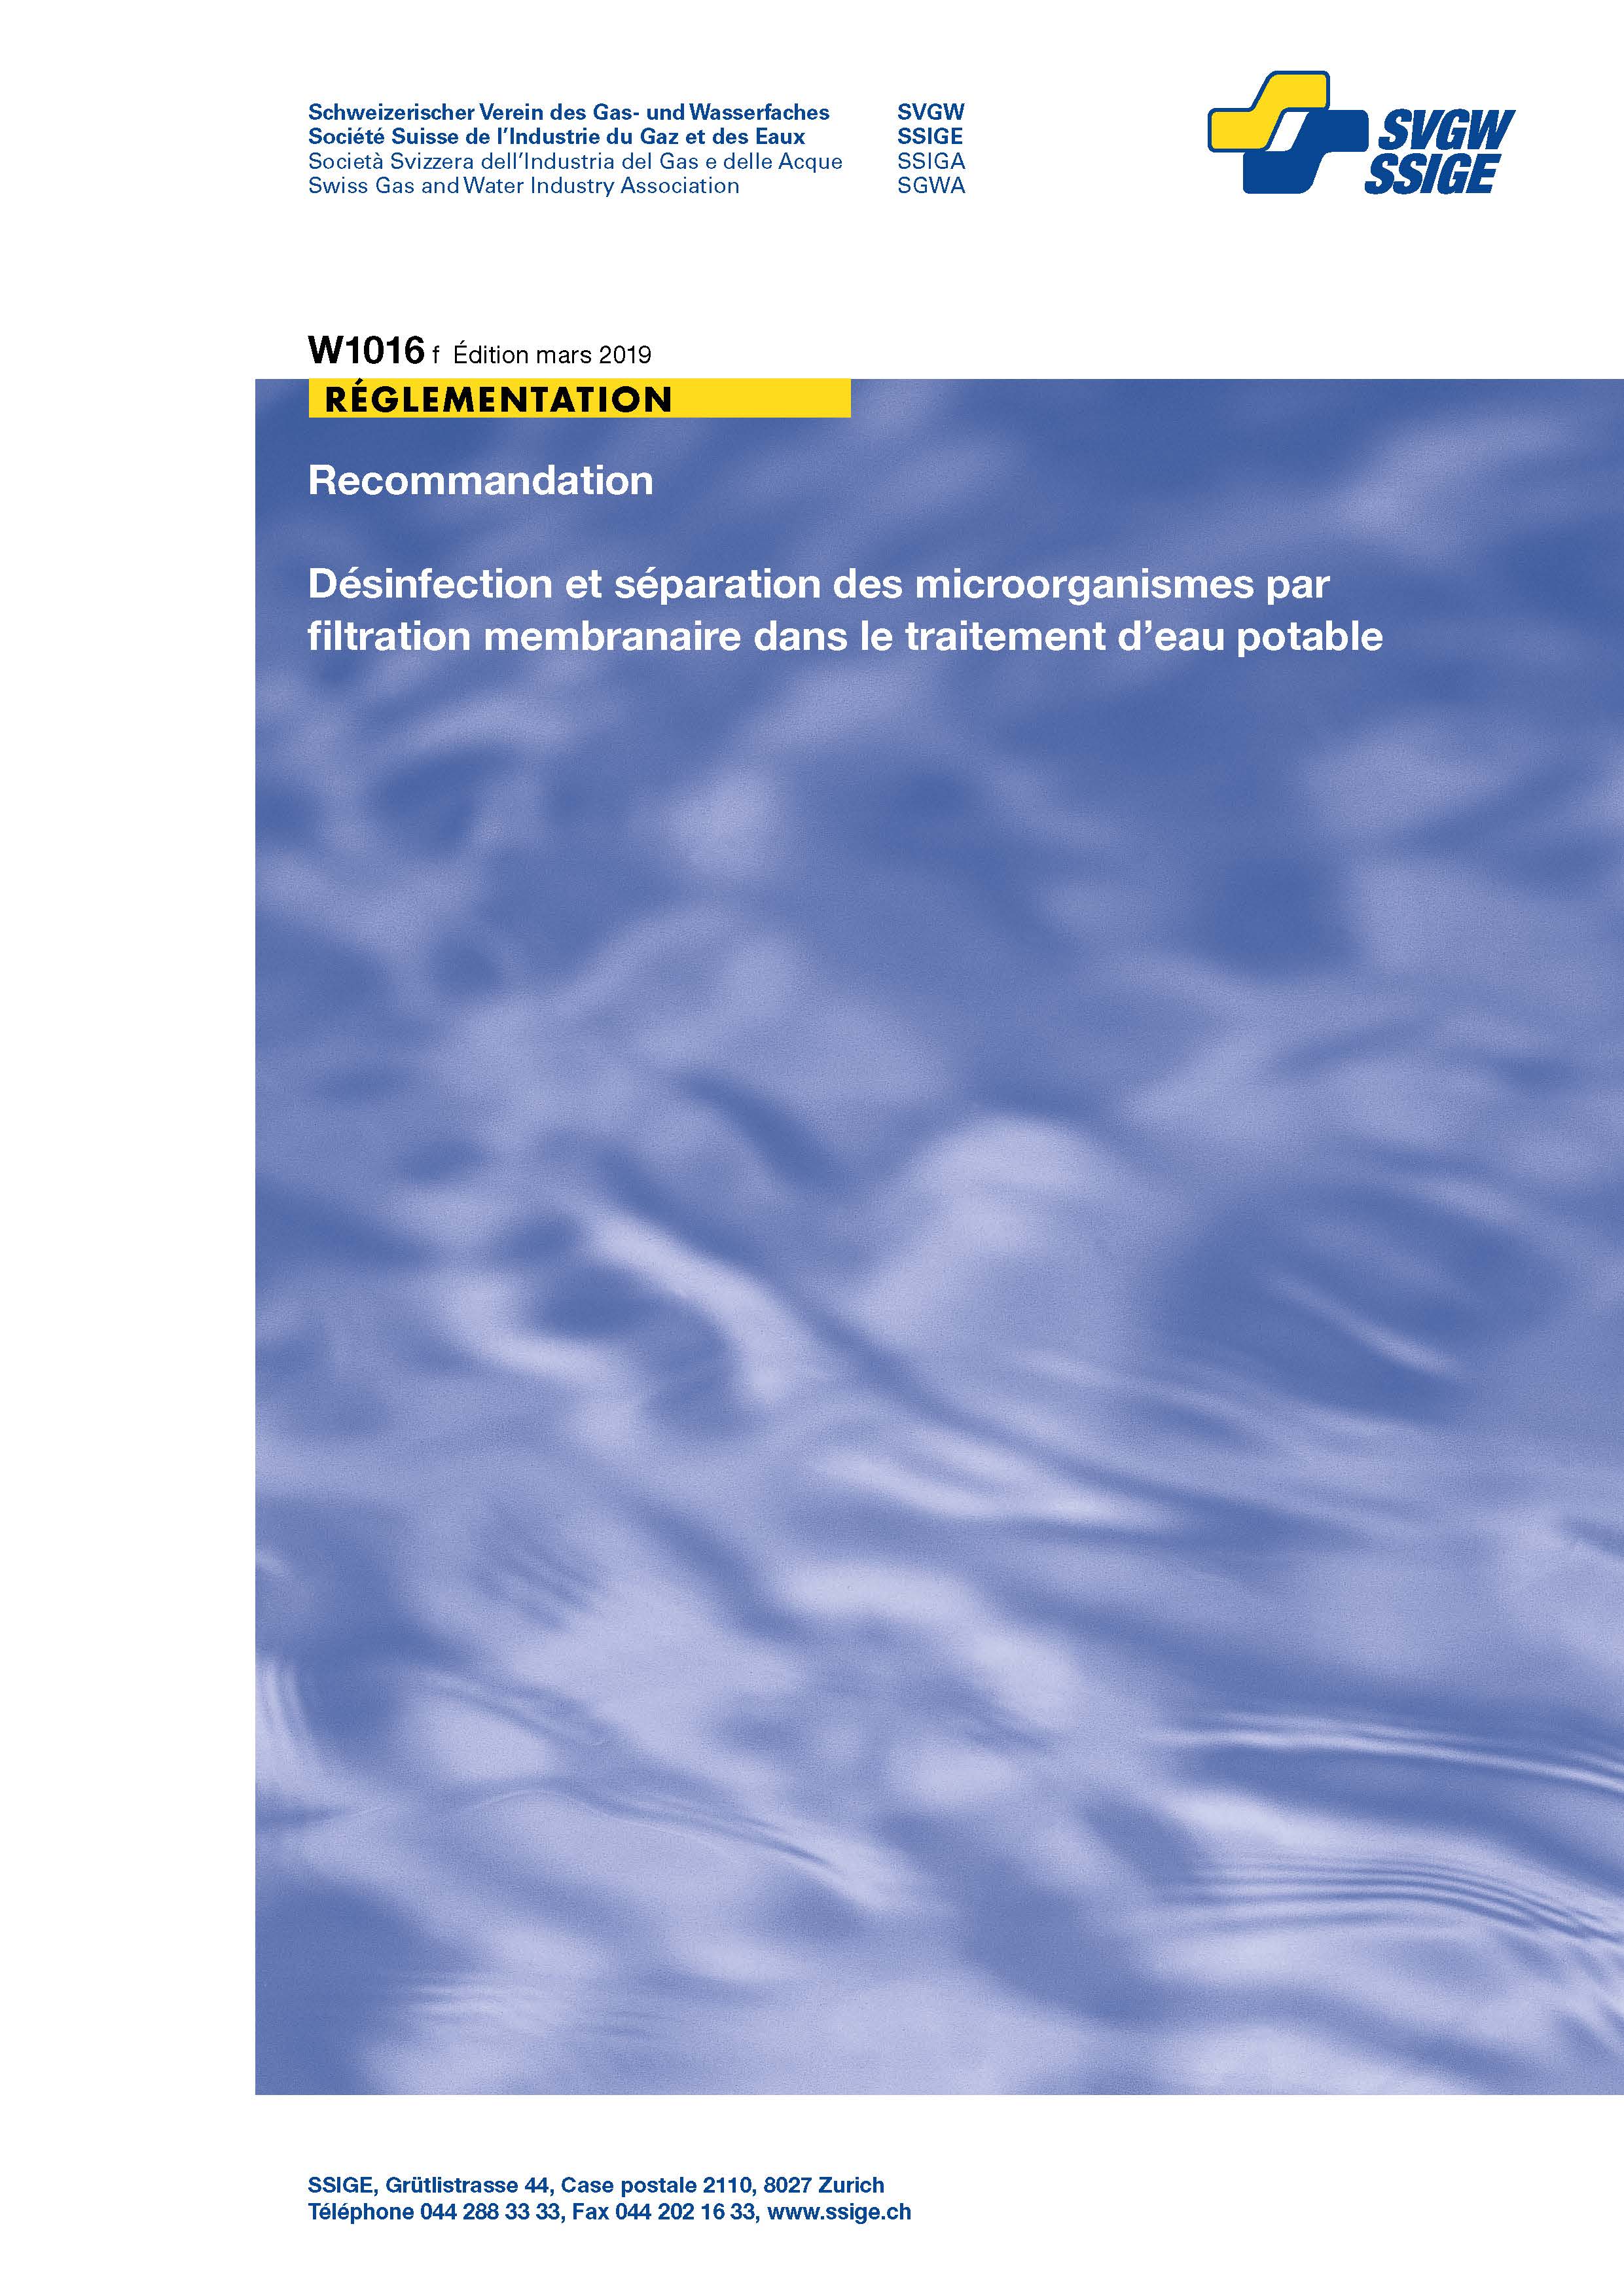 W1016 f Recommandation; Désinfection et séparation des microorganismes par filtration membranaire dans le traitement d'eau potable (2)